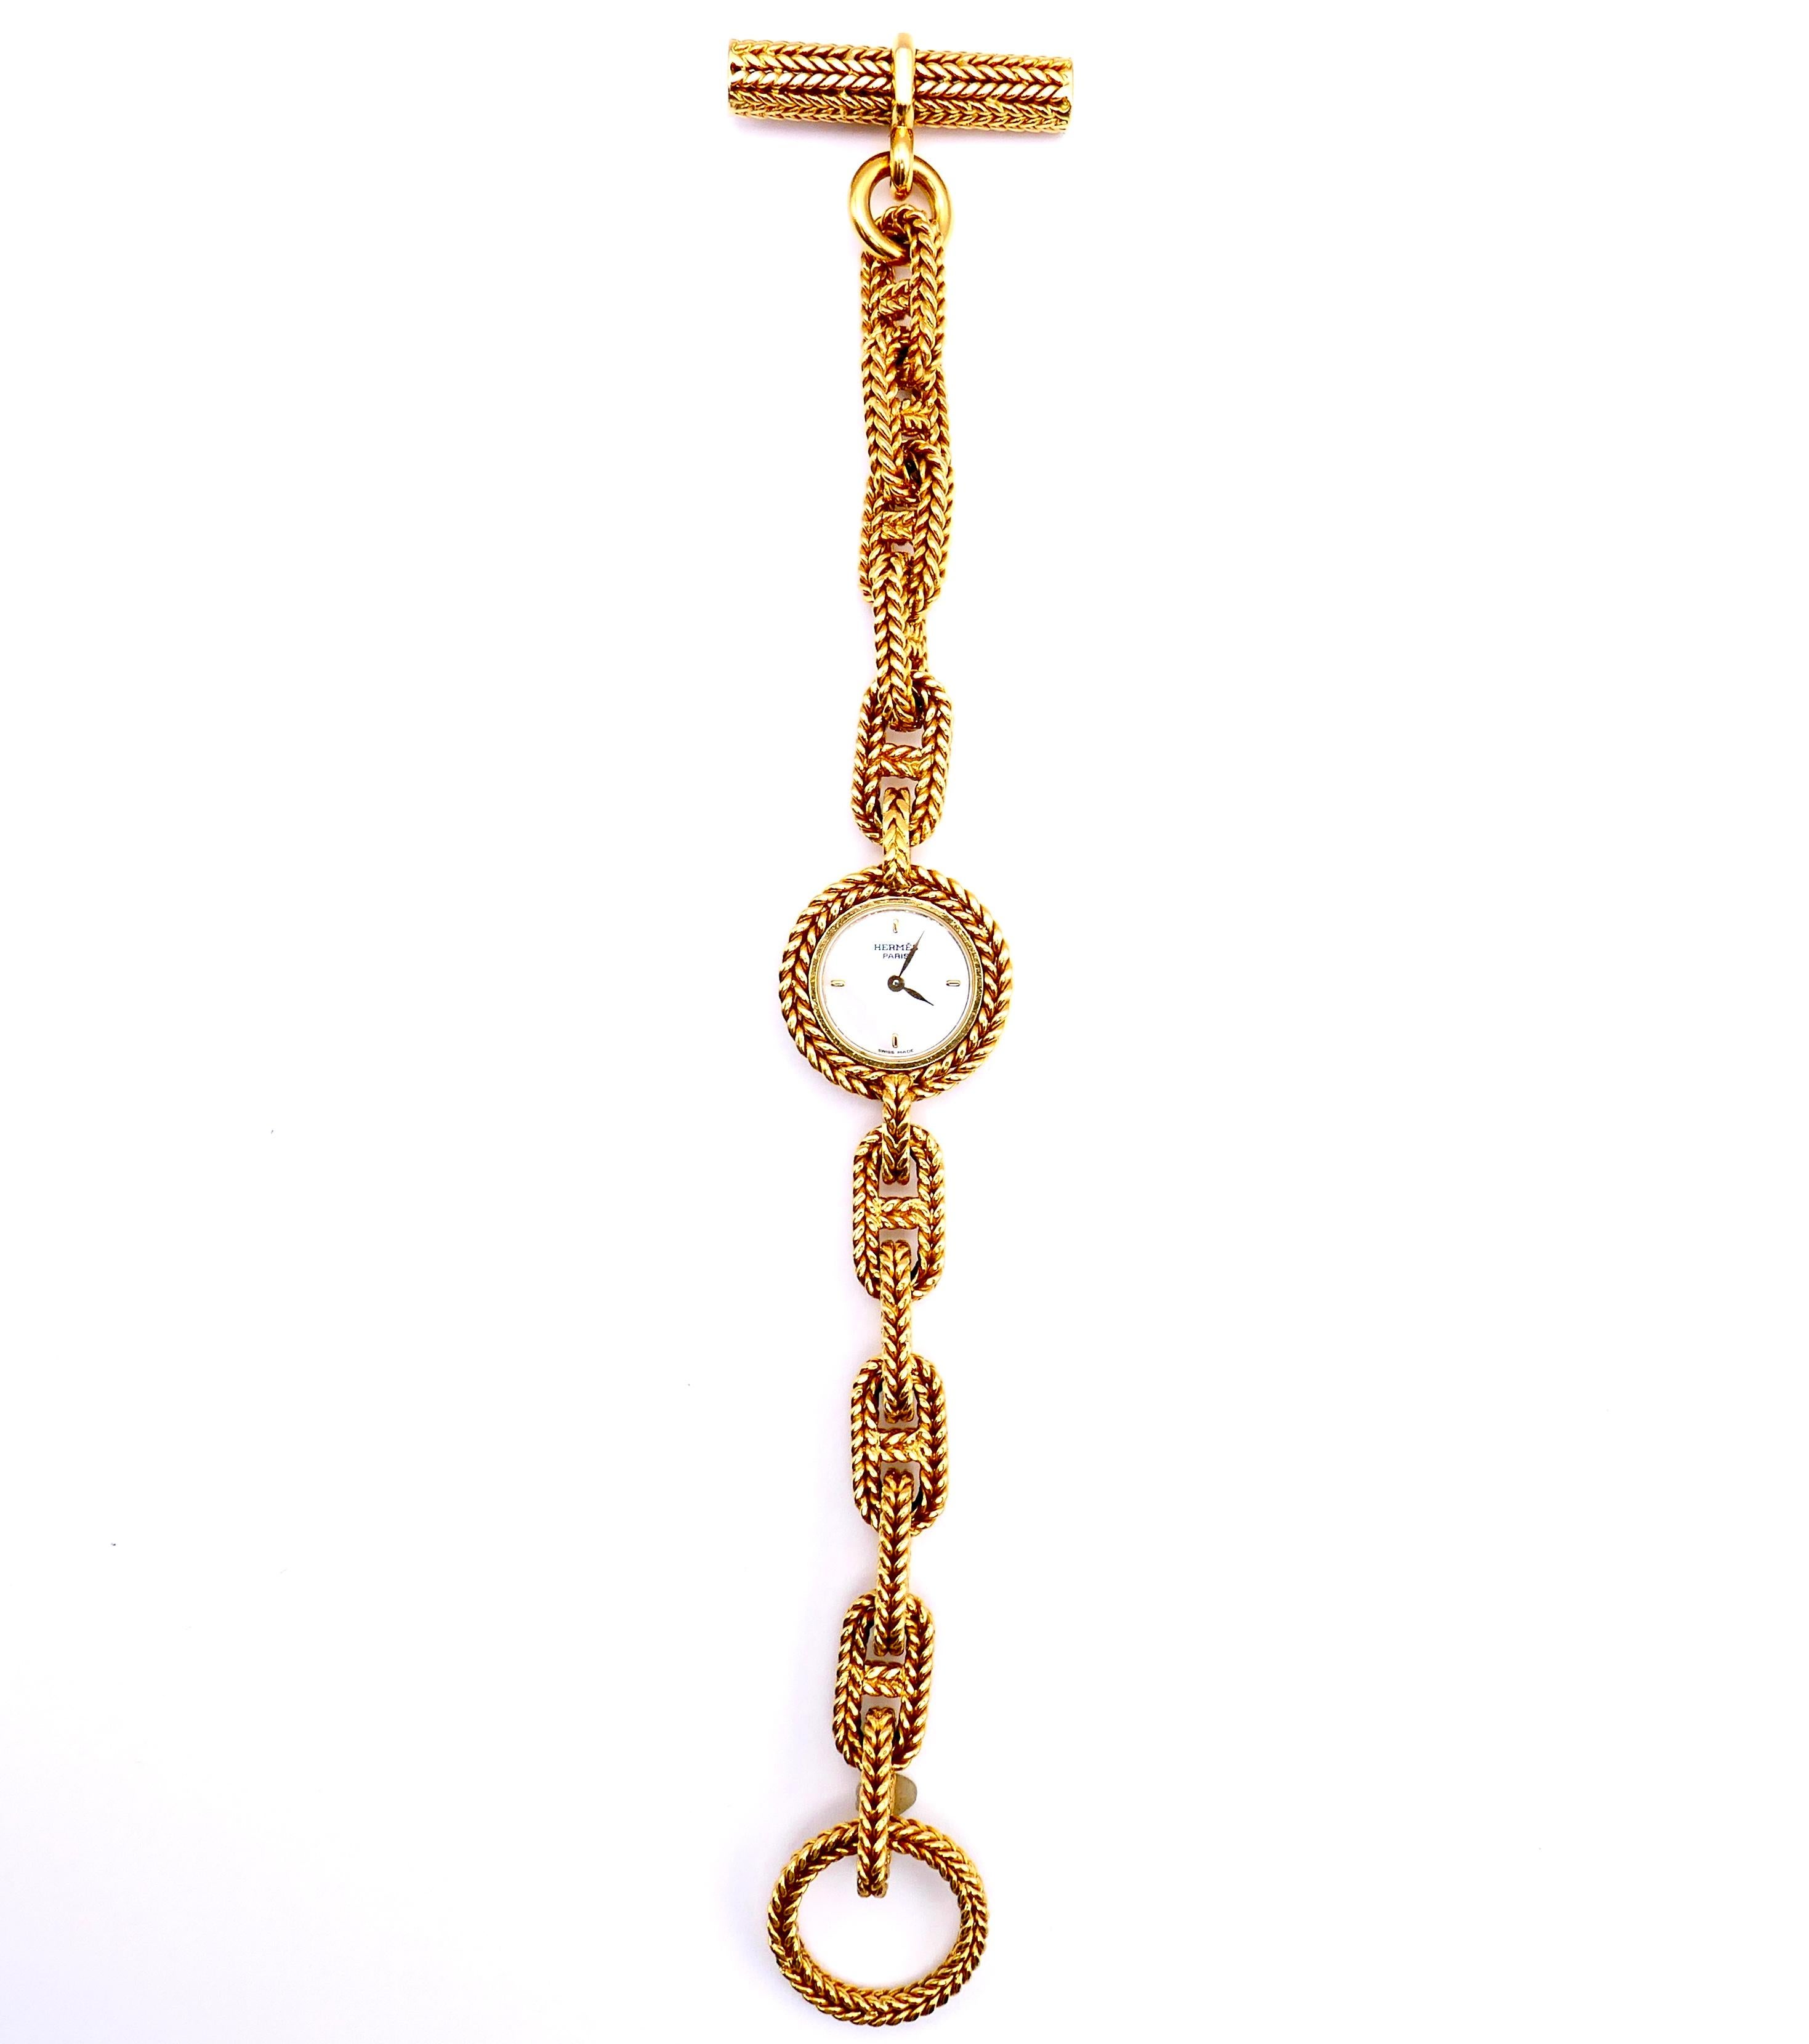 Une montre rare d'Hermès Paris de la collection Chaine D'Ancre. Fabriqué en or jaune 18k. Le bracelet présente des maillons tressés uniques de forme rectangulaire. Comporte un cadran en nacre et un mouvement à quartz. Fabrication suisse. Possède un